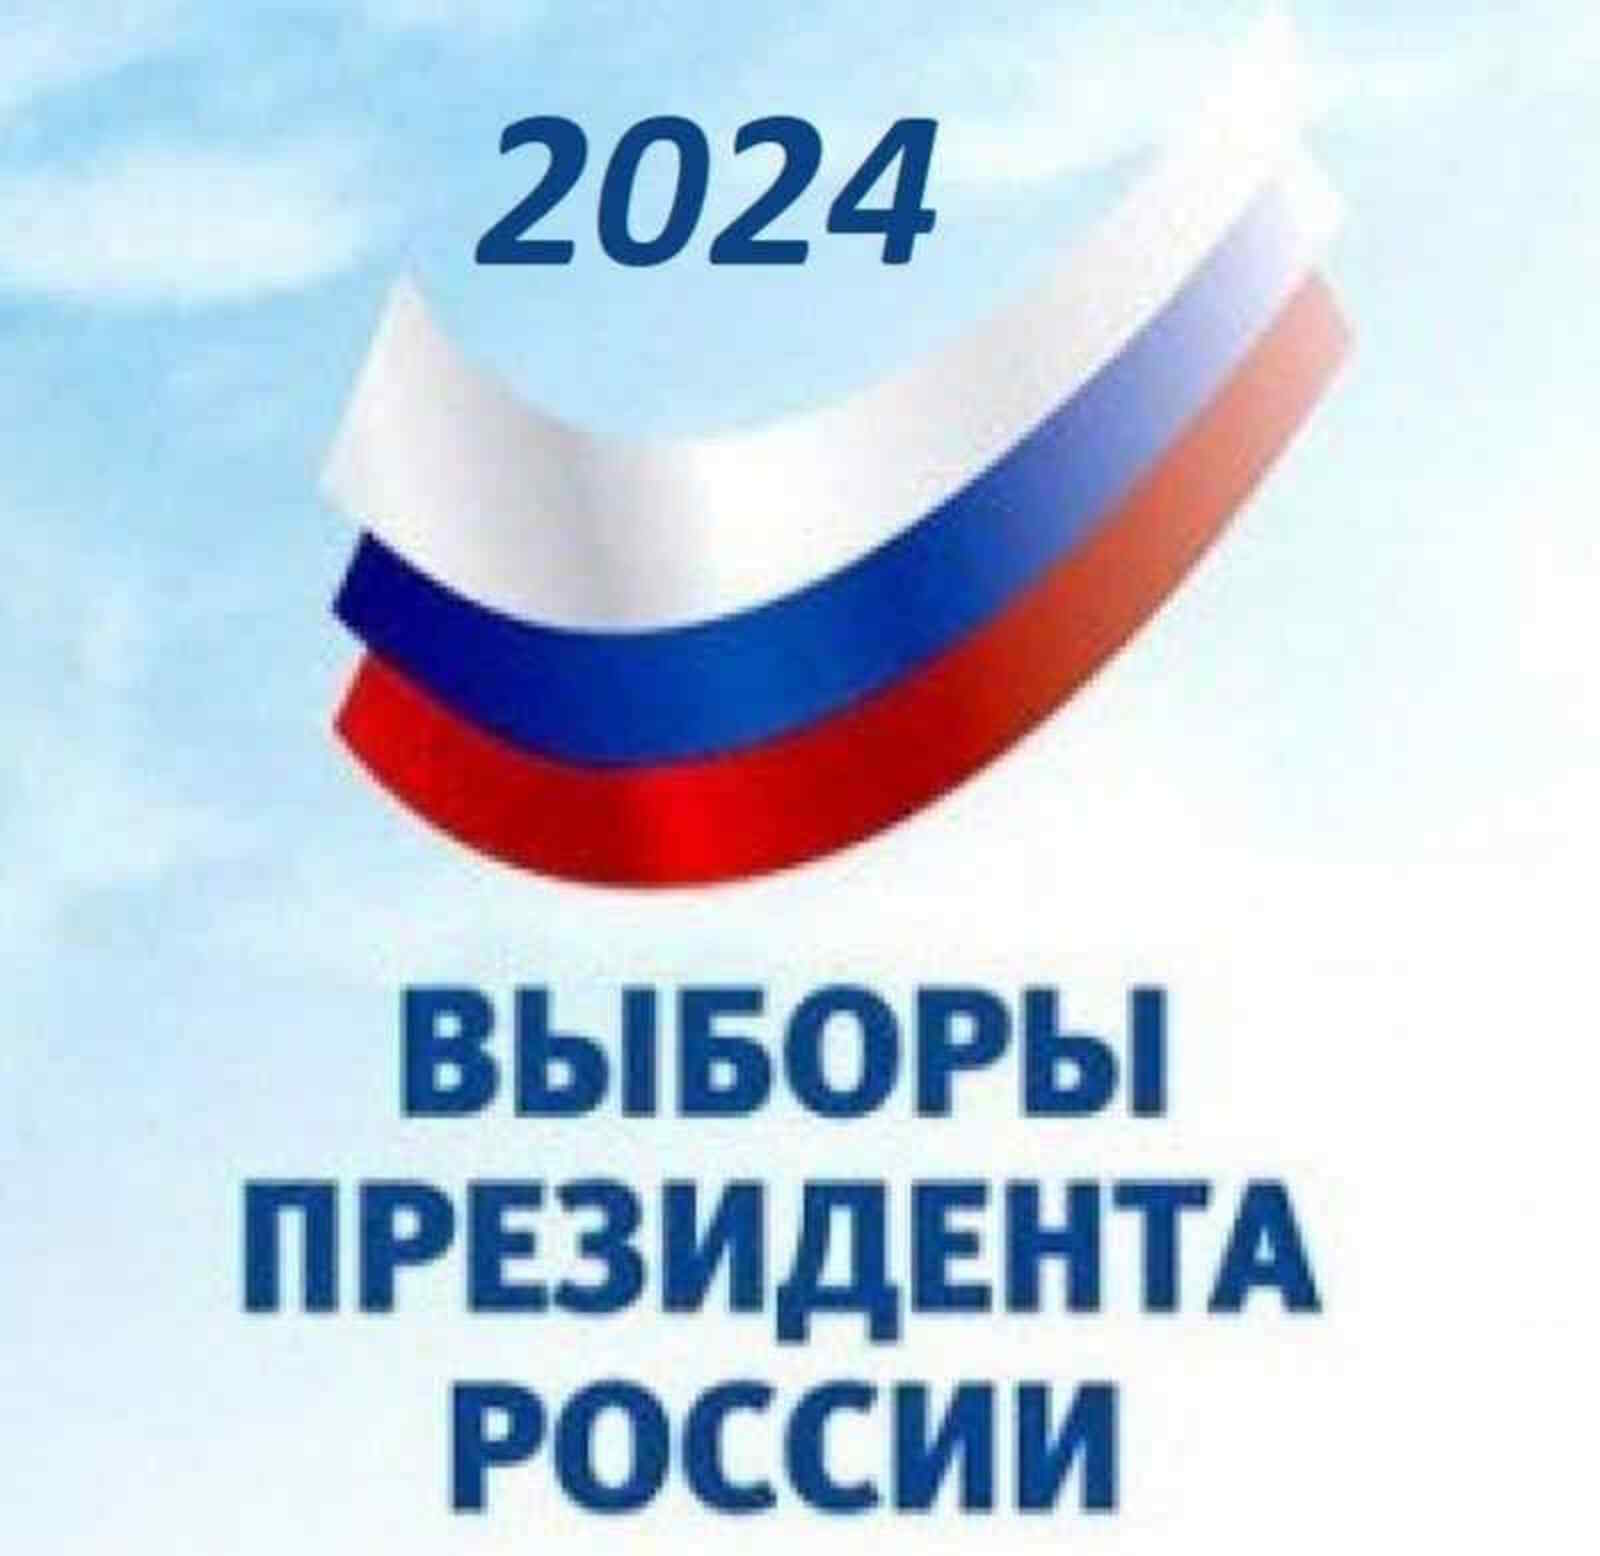 Вниманию зарегистрированных кандидатов на выборах президента Российской Федерации!